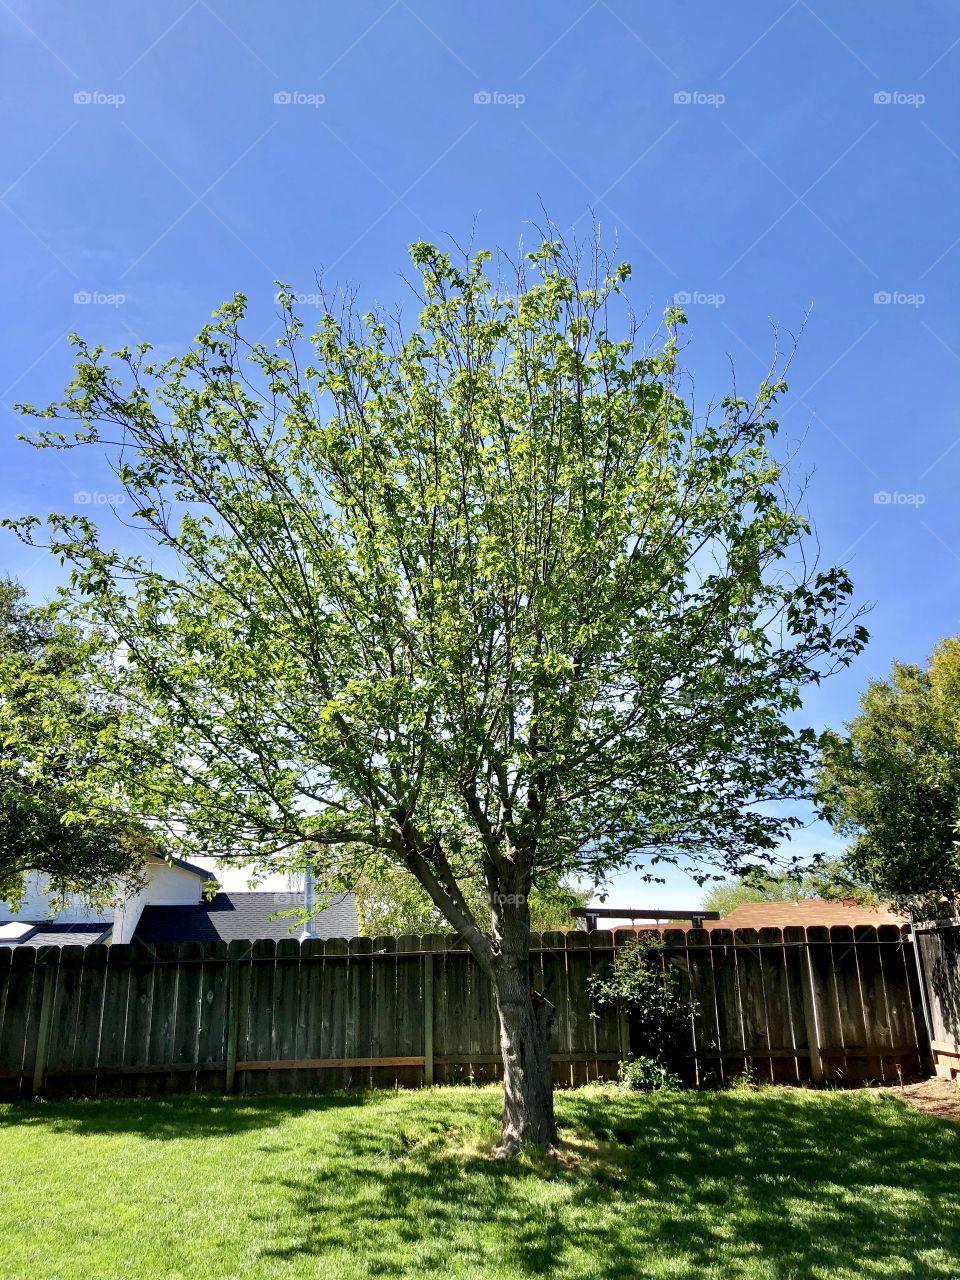 Tree in yard